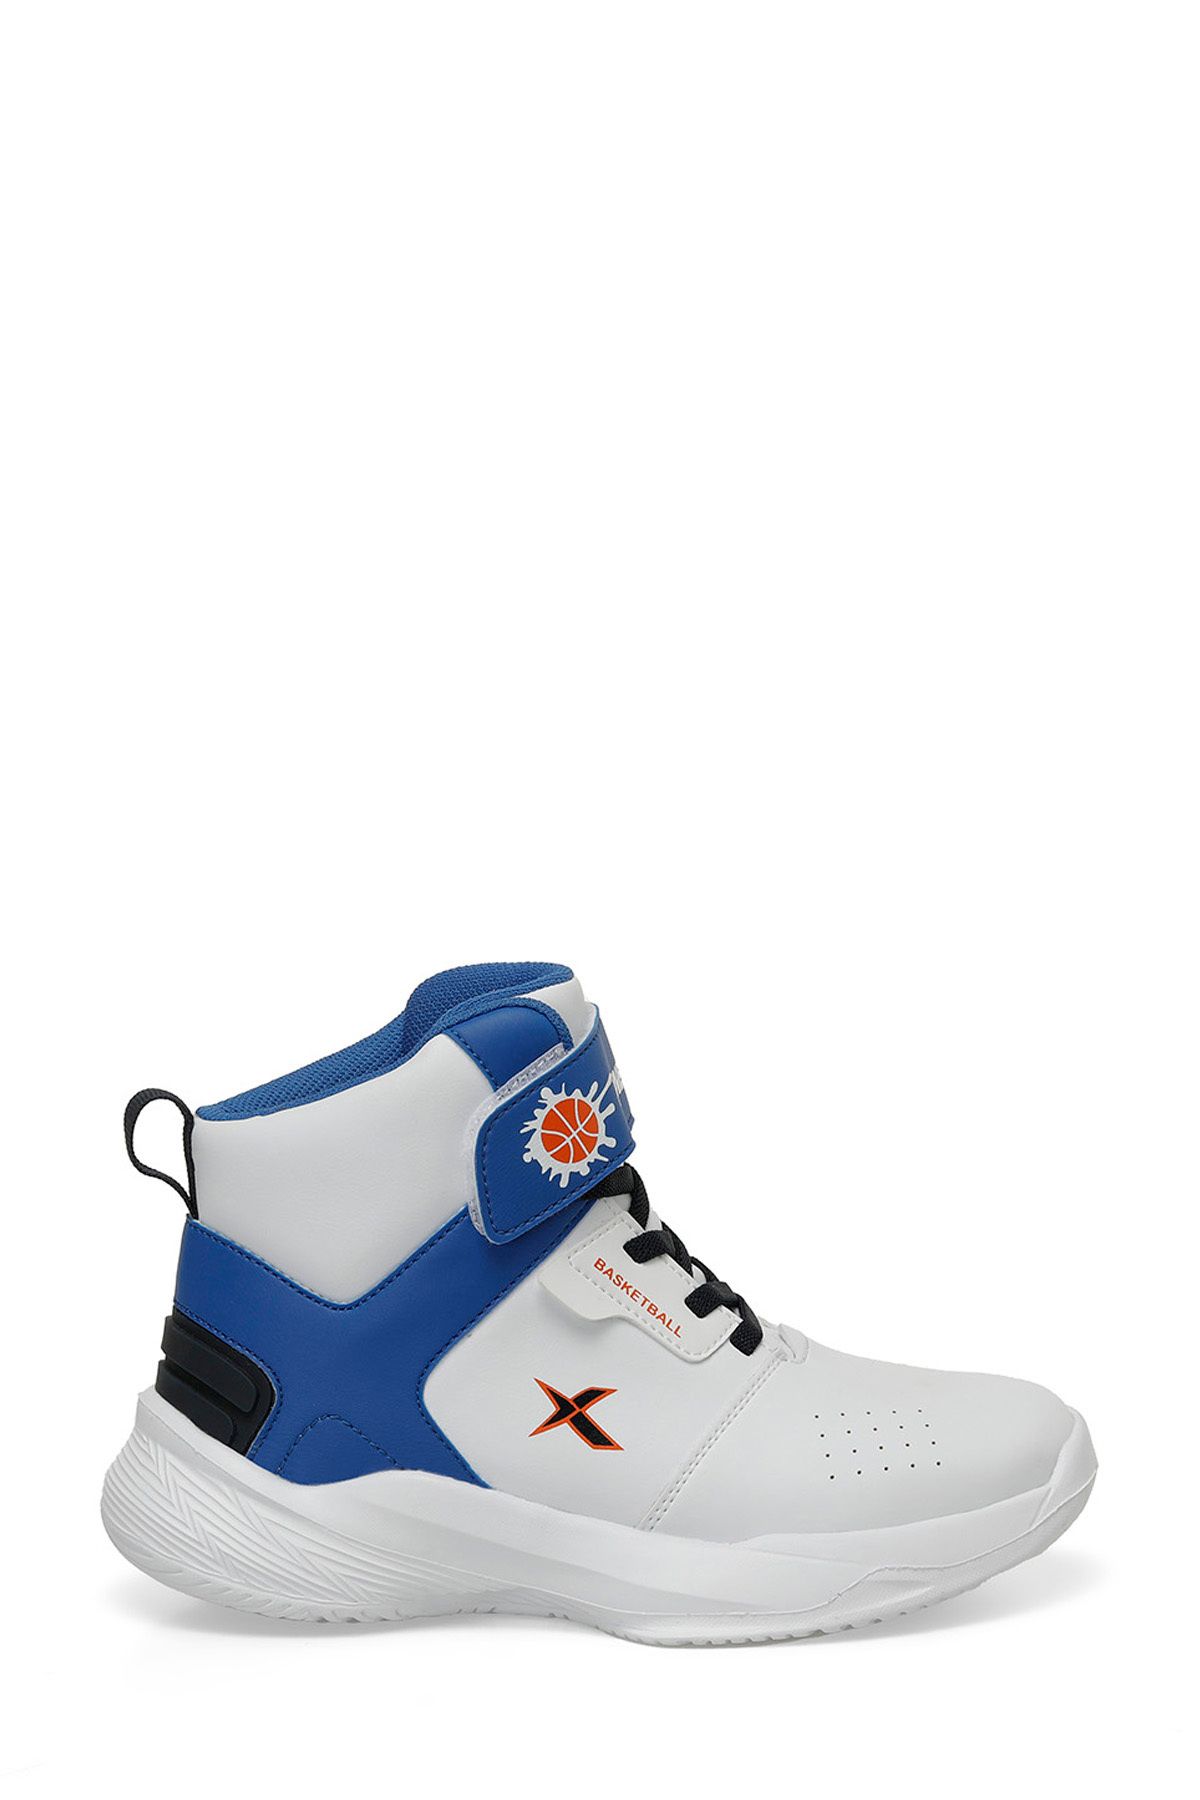 Kinetix SUPROX 4FX Beyaz Erkek Çocuk Basketbol Ayakkabısı